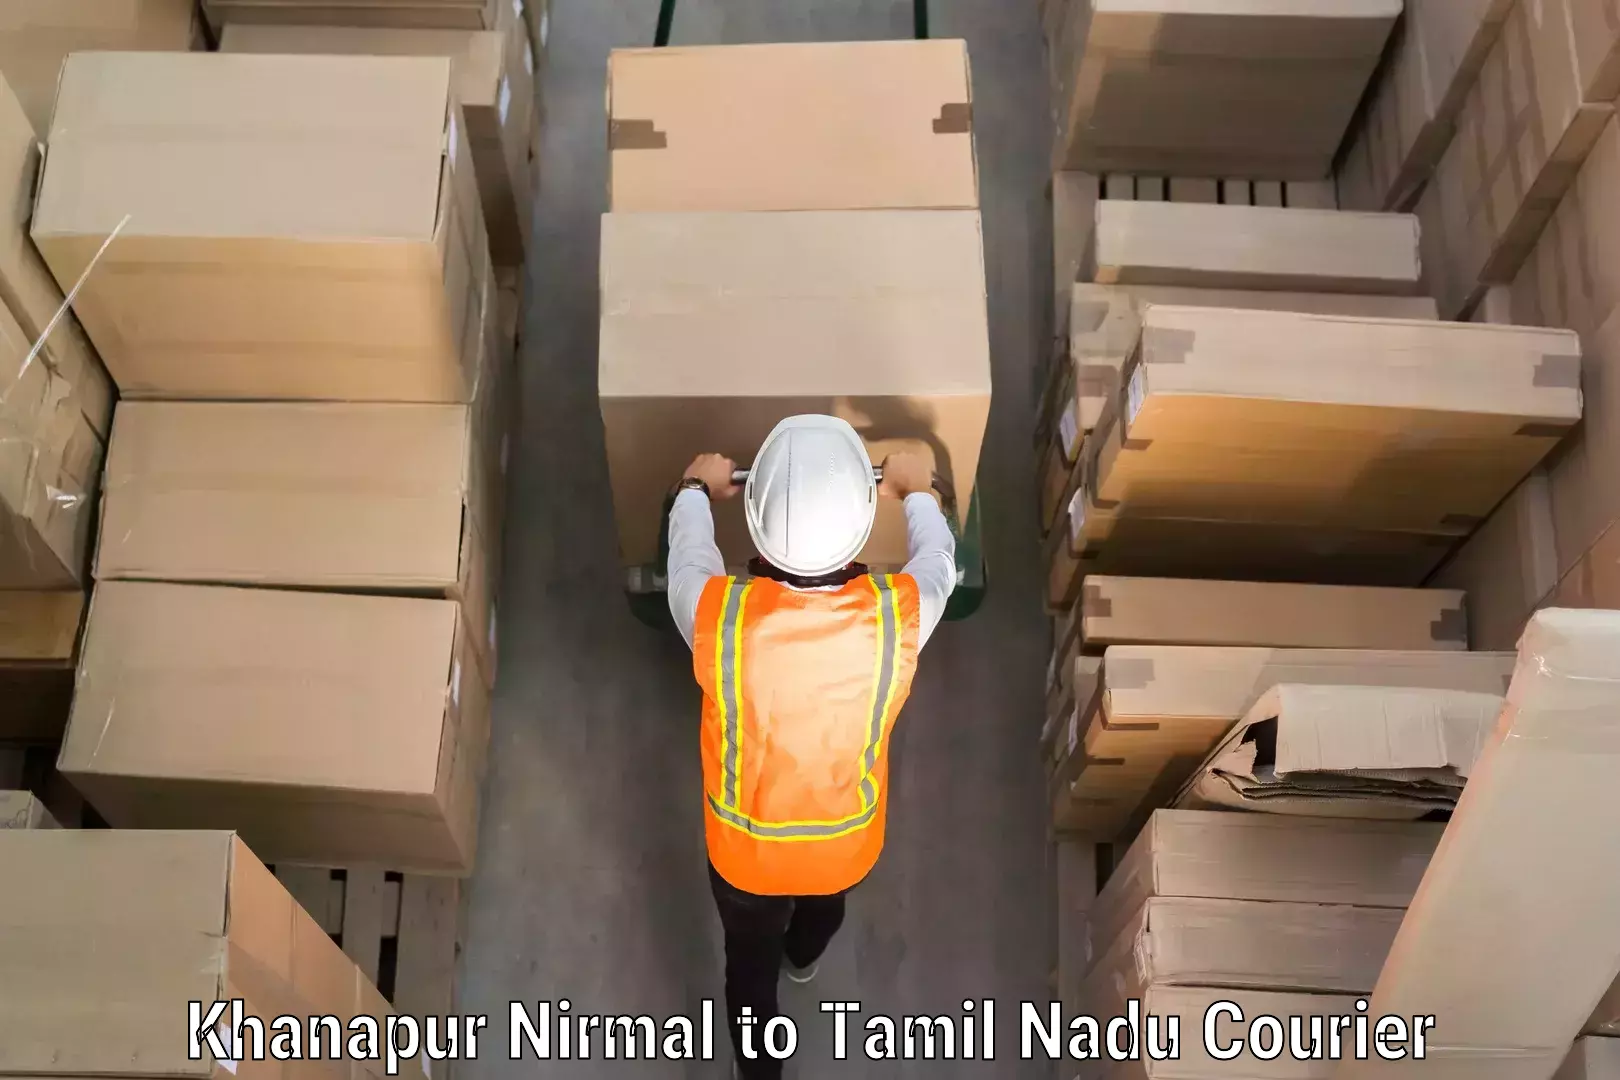 Luggage delivery optimization Khanapur Nirmal to Kudankulam